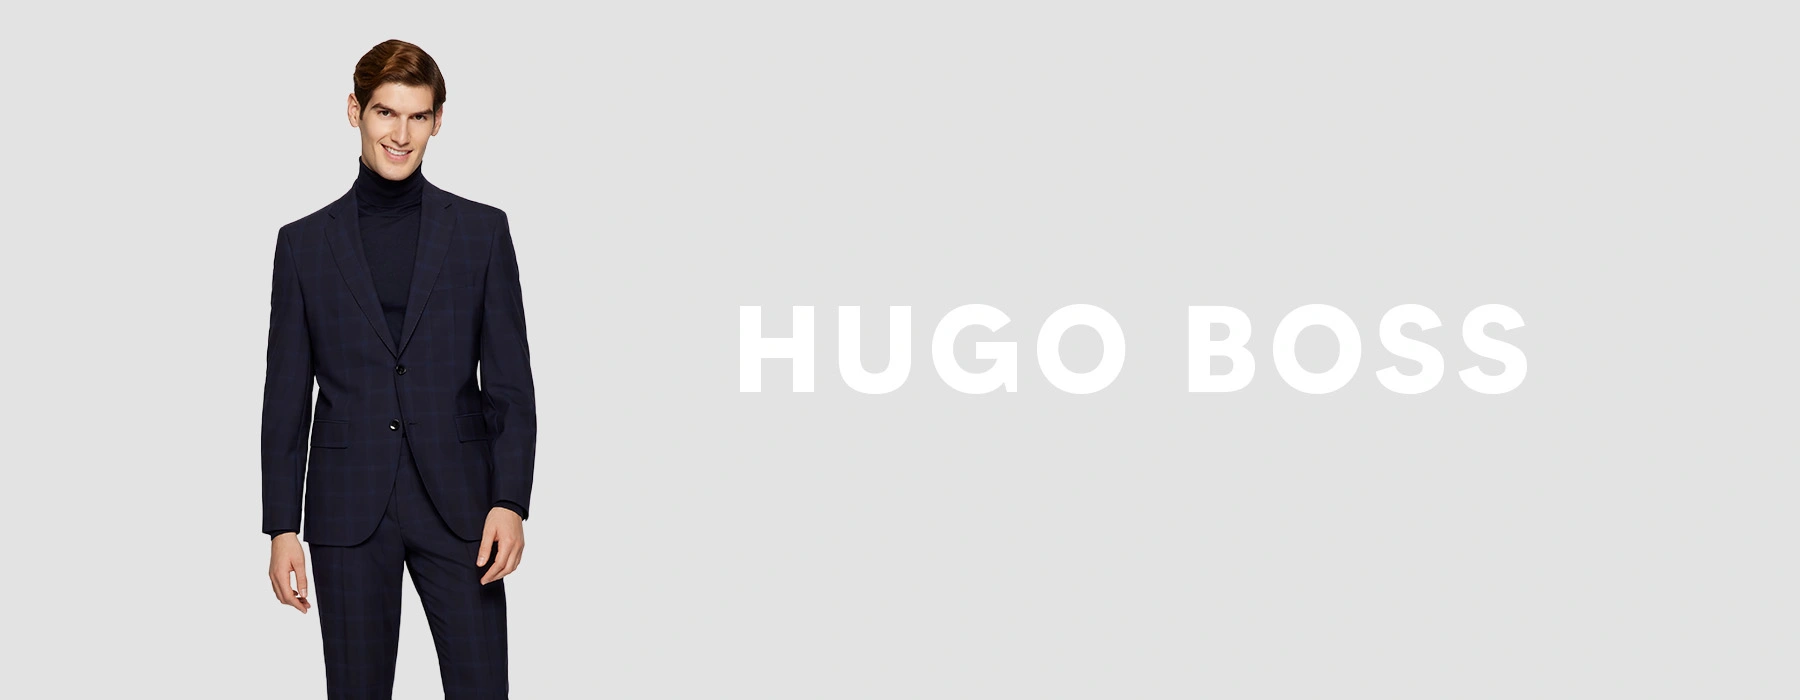 naald het winkelcentrum Beschrijvend Hugo Boss Kostuums | Online Kopen | Bos Men Shop